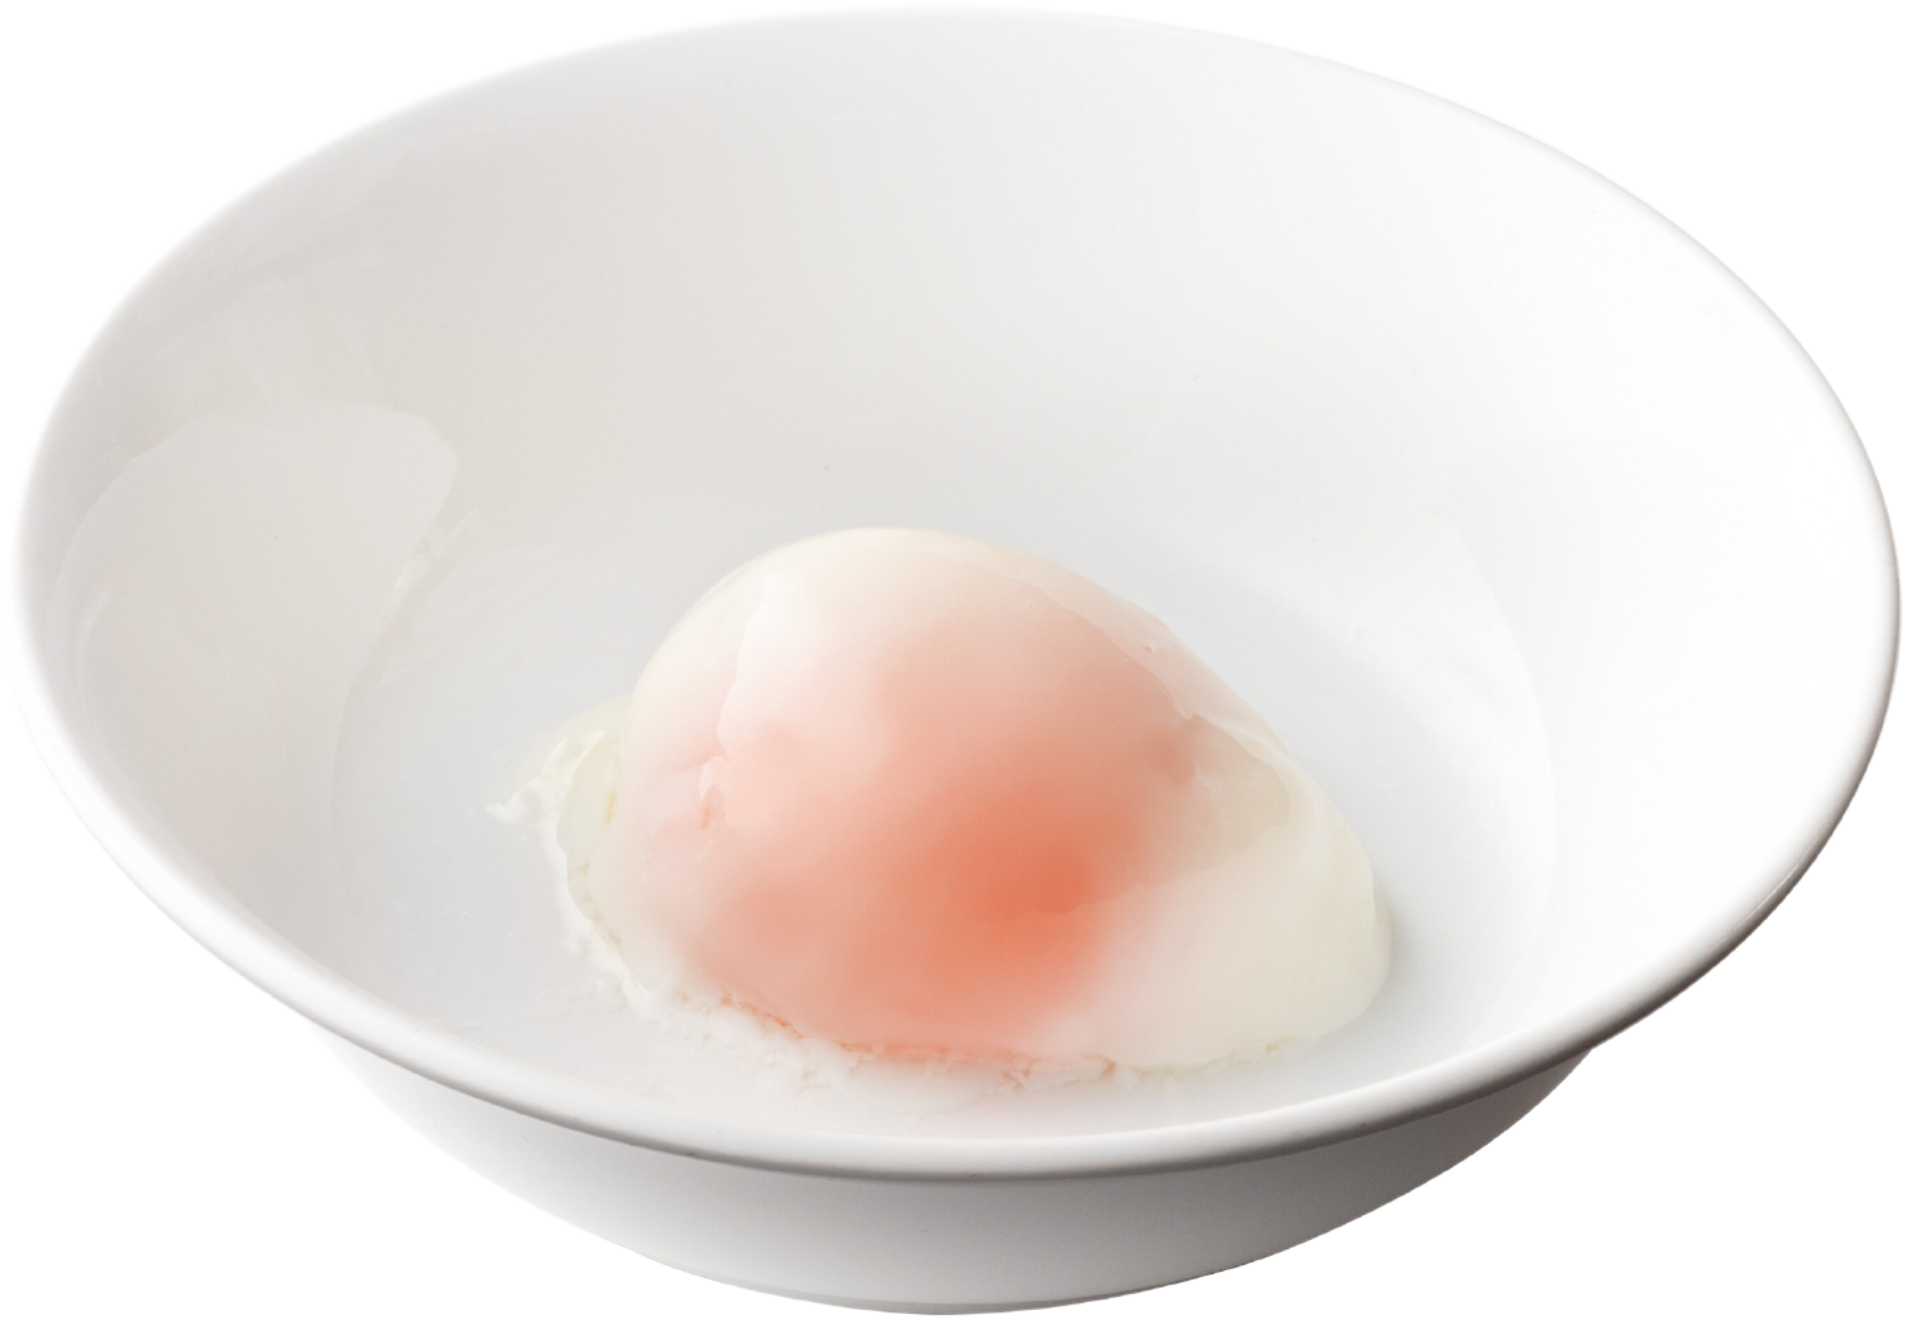 103. Soft Boiled Egg